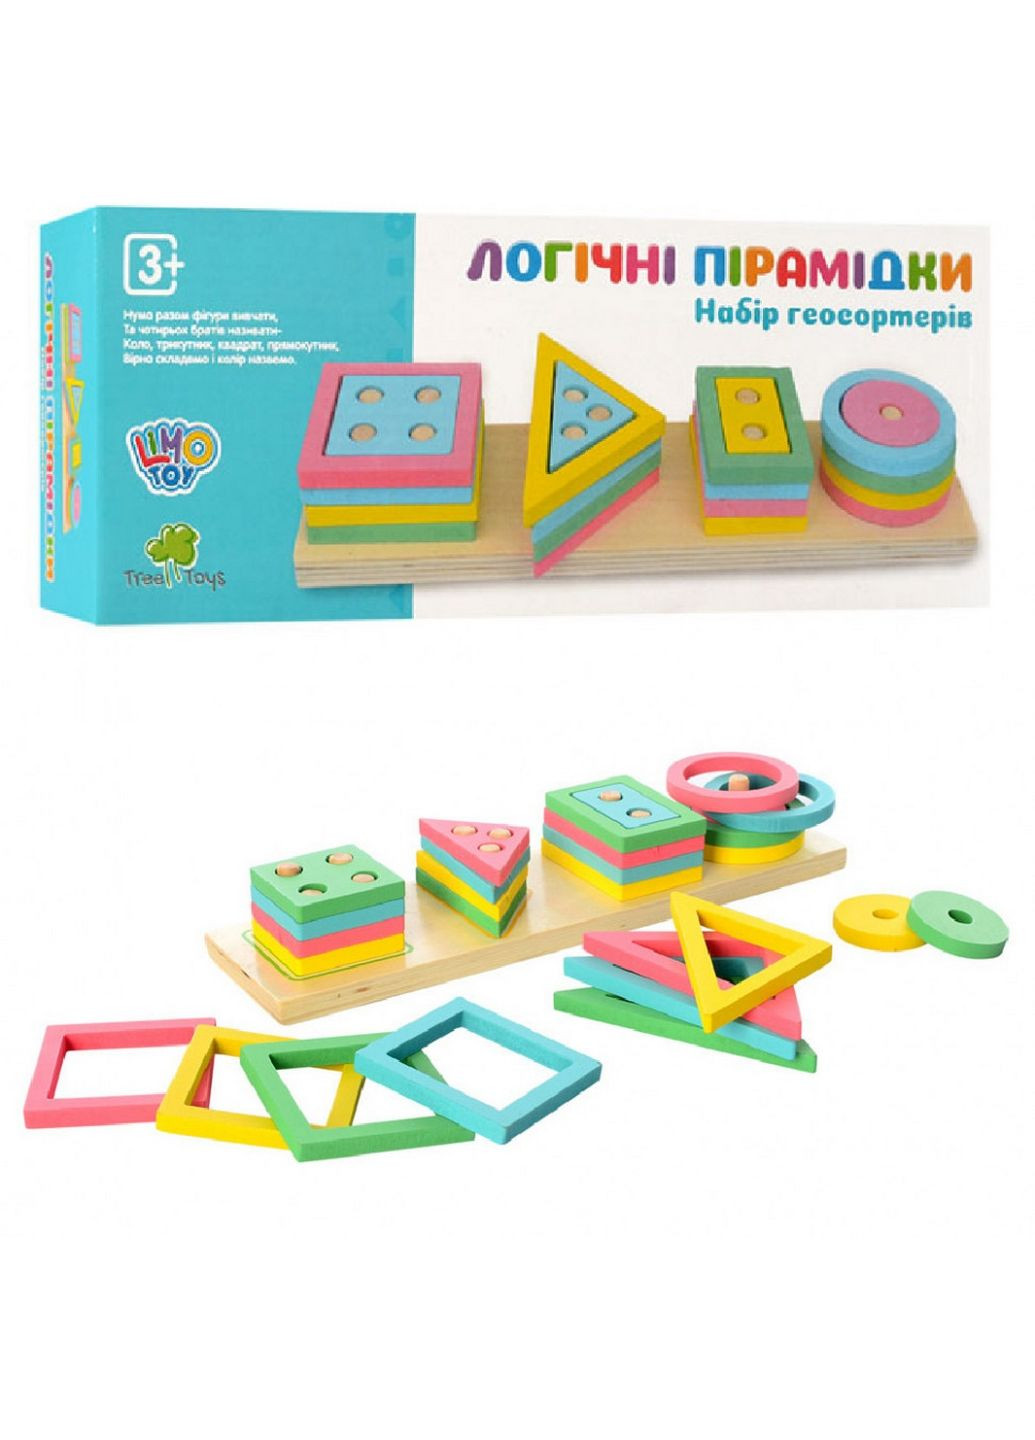 Розвиваюча іграшка геометрика дерев'яна Limo Toy (282586797)